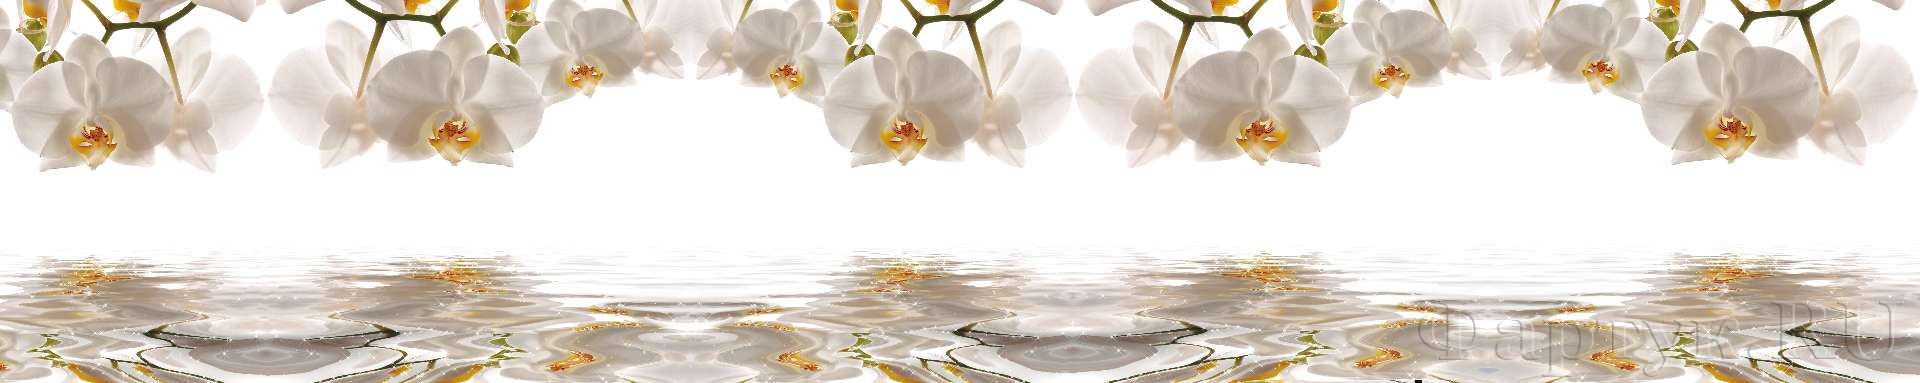 Белые орхидеи над водой